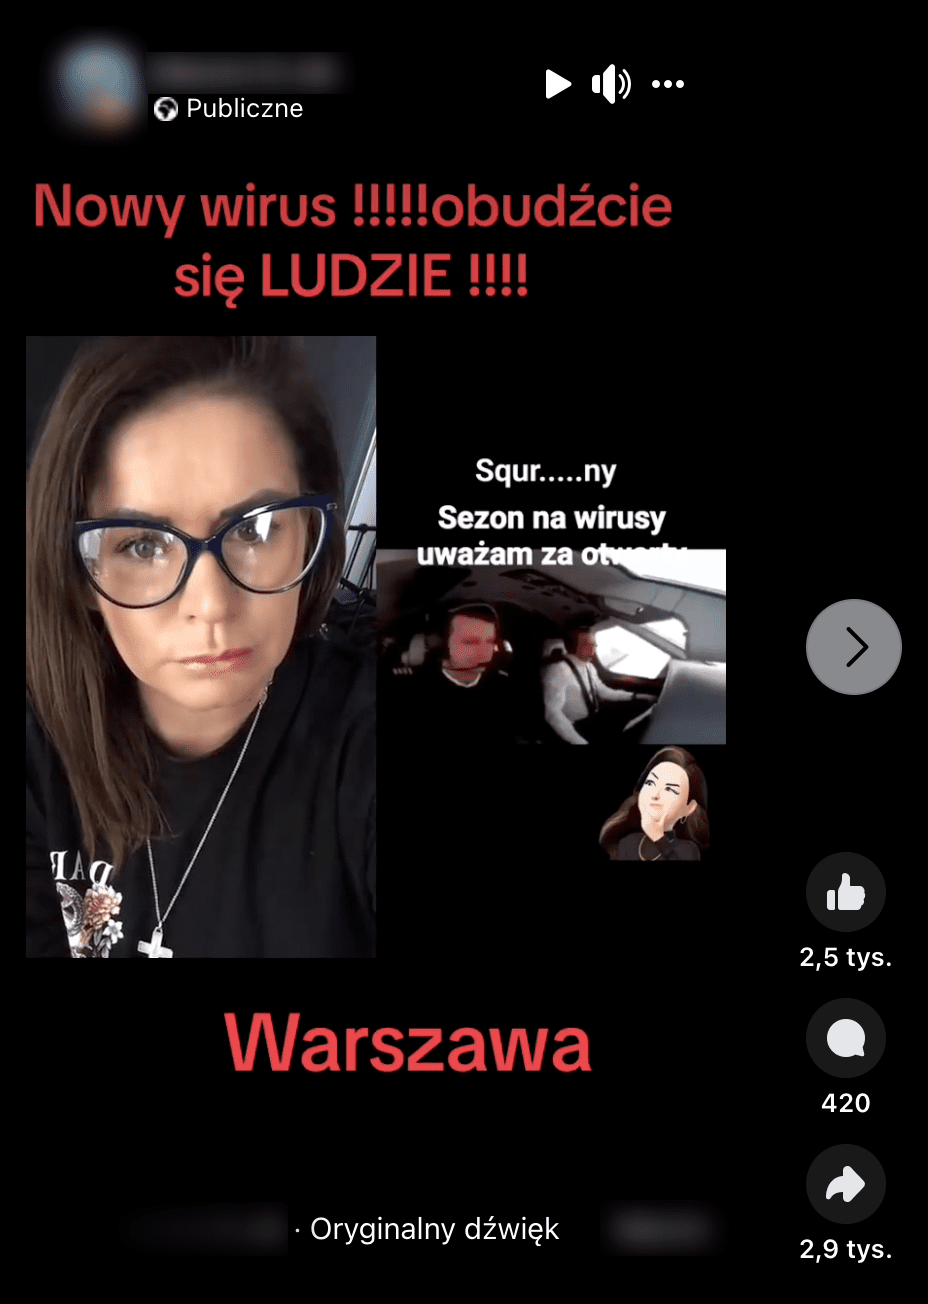 Zrzut ekranu rolki na Facebooku. W prawej części widzimy dwóch pilotów w kokpicie. Po lewej jest twarz młodej kobiety w okularach. Czerwonymi literami napisano: „Nowy wirus !!!!!obudźcie się LUDZIE !!!! Warszawa”.